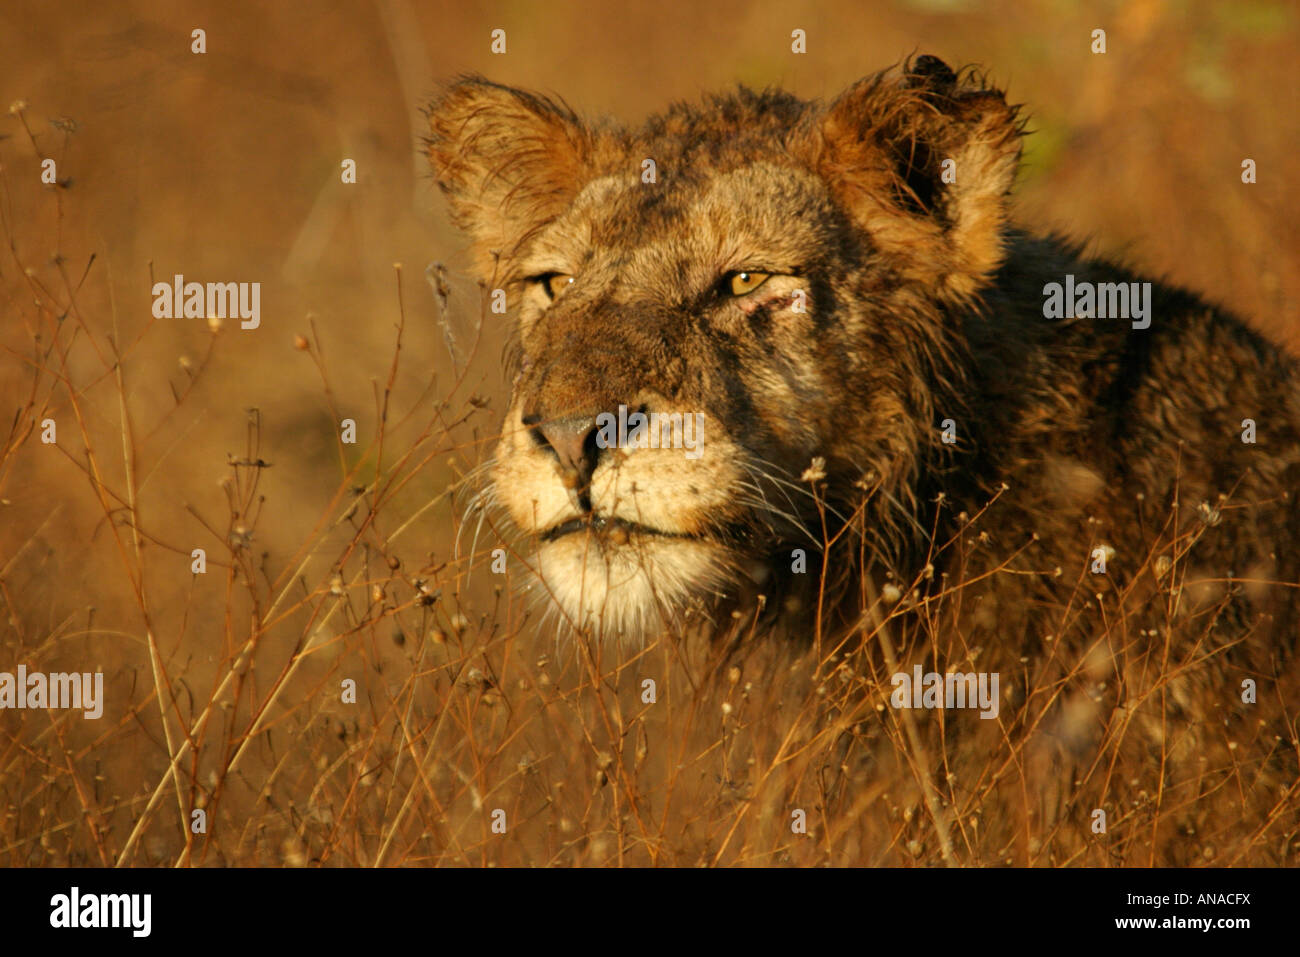 Porträt eines jungen nassen Löwen im Herbst Rasen Stockfoto